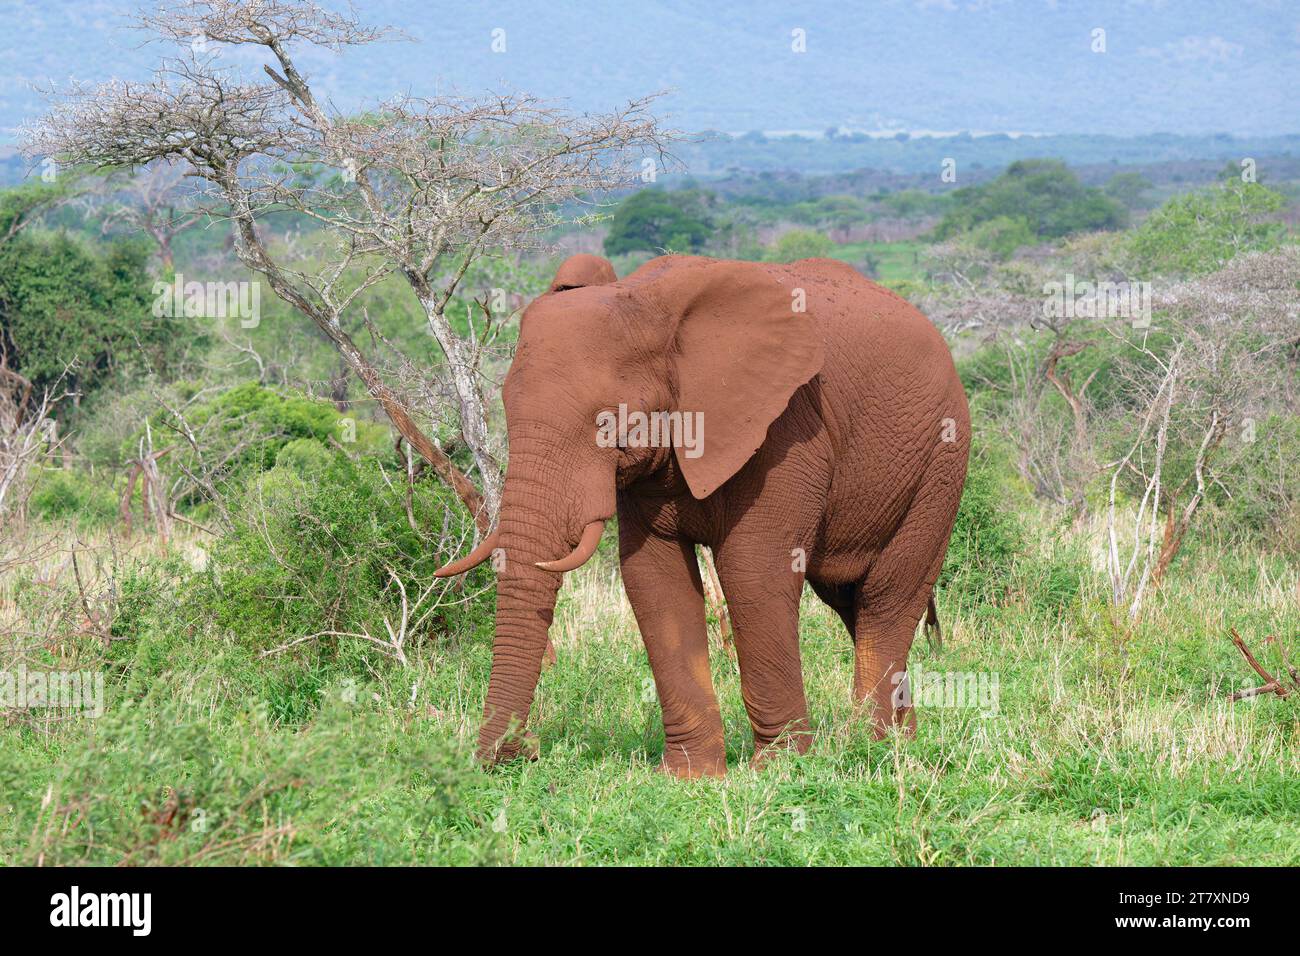 Elefante africano (Loxodonta africana) ricoperto di terreno rosso che cammina nella savana, nella provincia di KwaZulu Natal, in Sudafrica, Africa Foto Stock